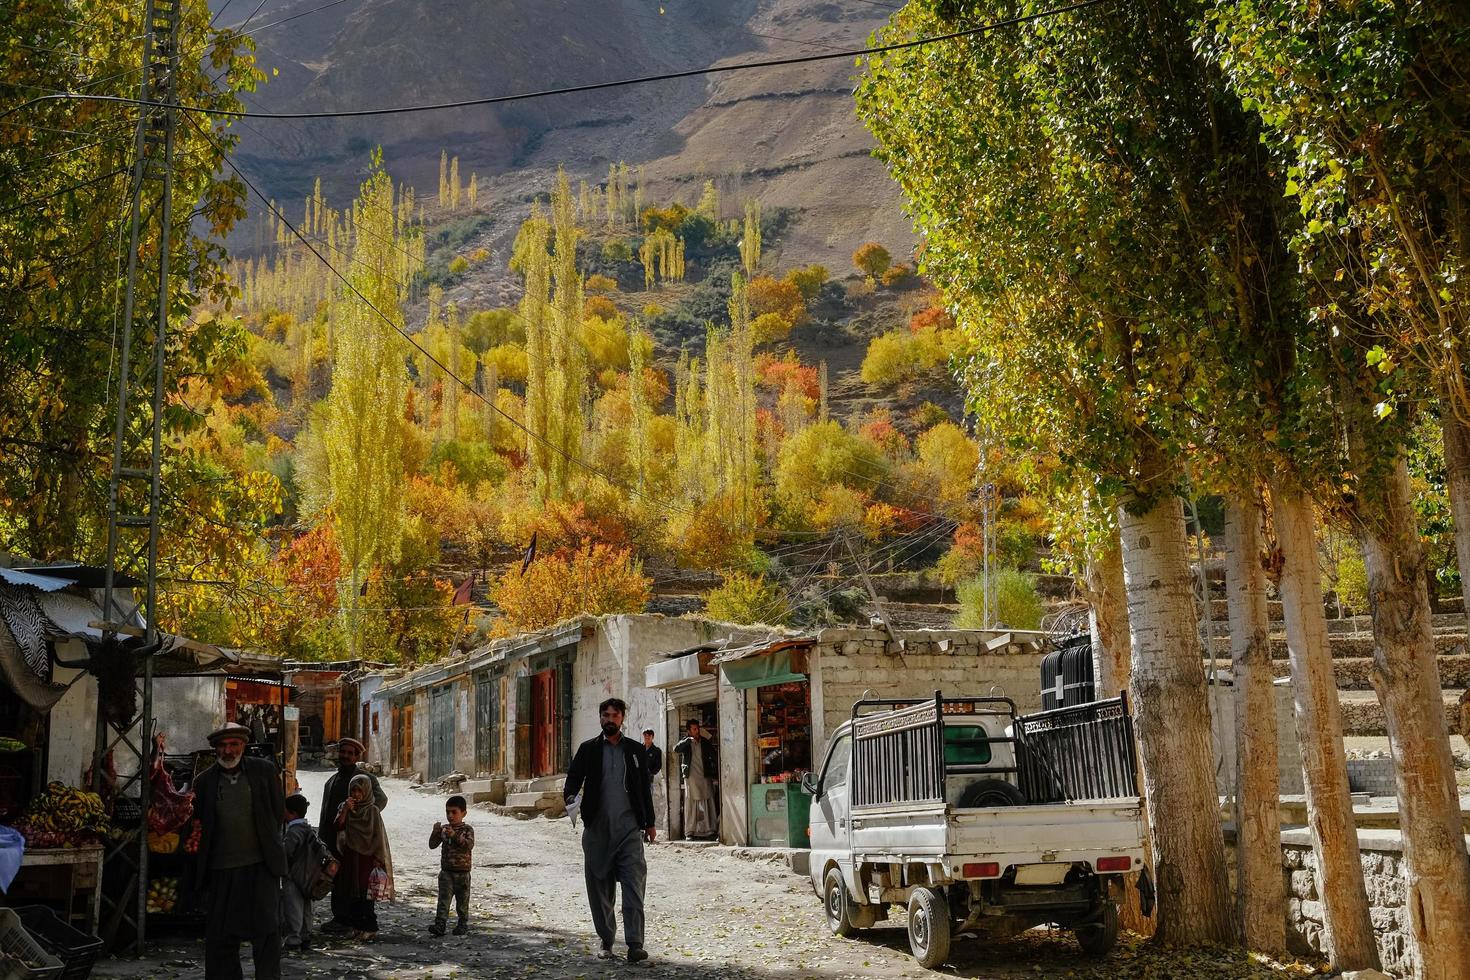 gilgit baltistan, pakistan, 2017 - feuillage coloré en automne, petit village paisible de la vallée de nagar. photo